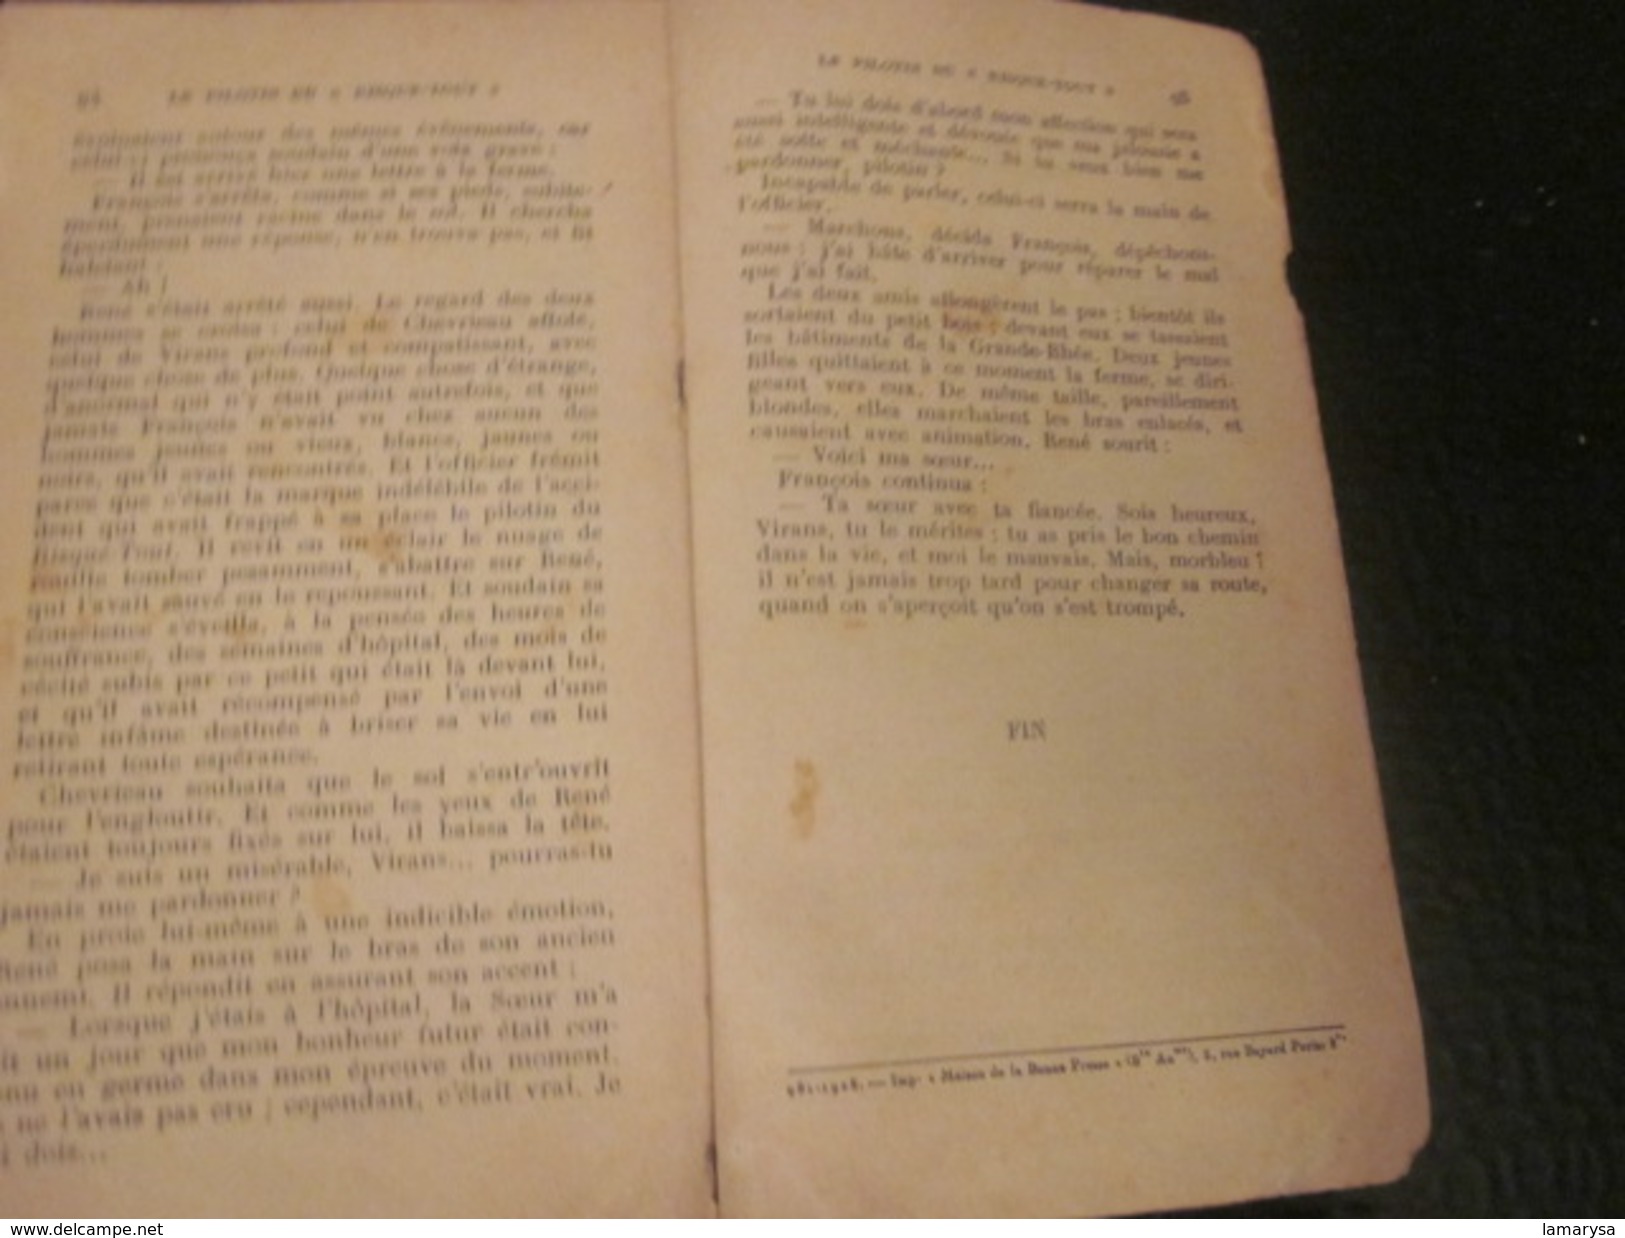 édition 1928- Mini Livret N°11 de Mauclère Collection BAYARD PARIS 5 rue BAYARD Le PILOTIN DU "RISQUETOUT" 97 pages 75c